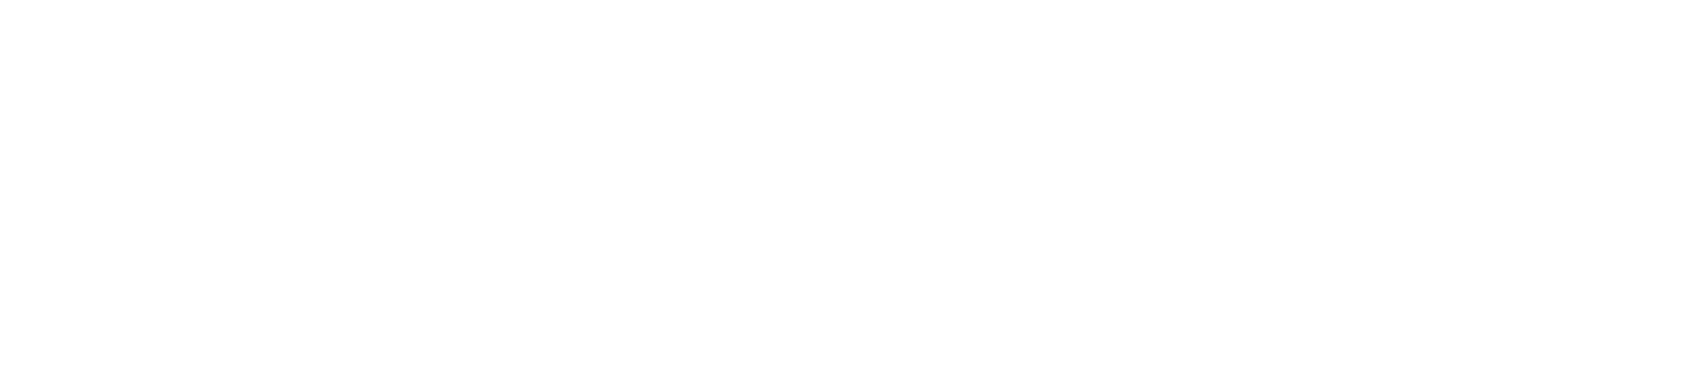 「フレデリズムツアー2017 ～ぼくらのTOGENKYO～」SPECIAL SITE